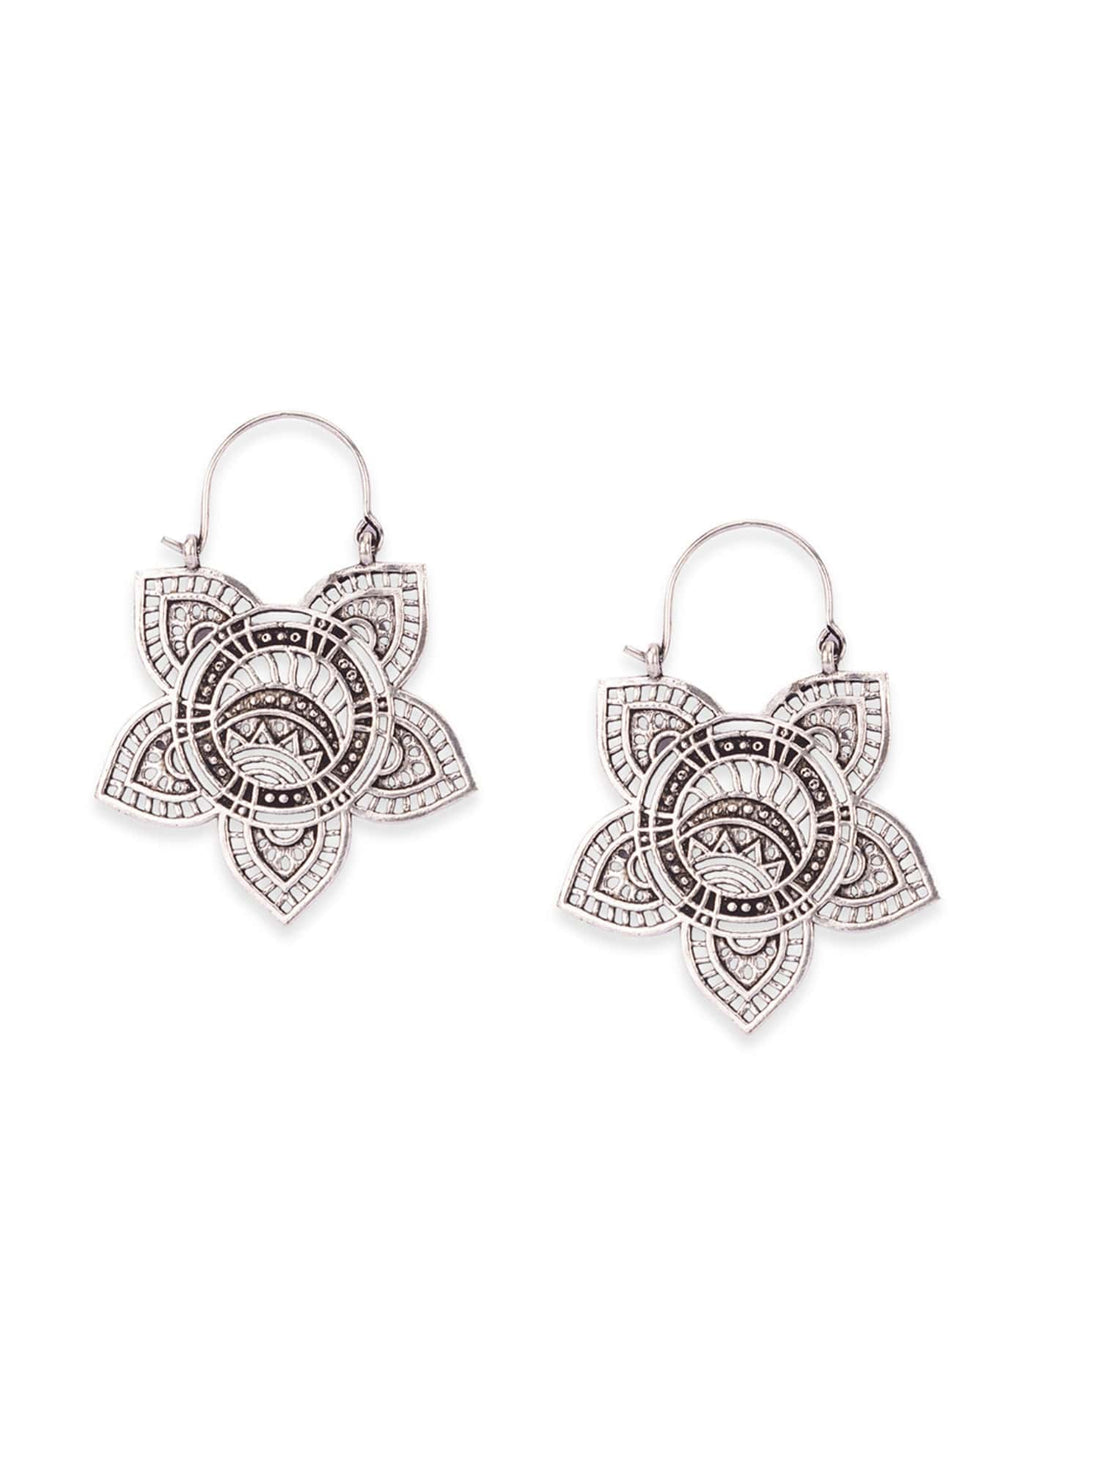 Daily Wear Hoops Earrings - Garden Elegance Silver-Plated Brass Earrings By Studio One Love